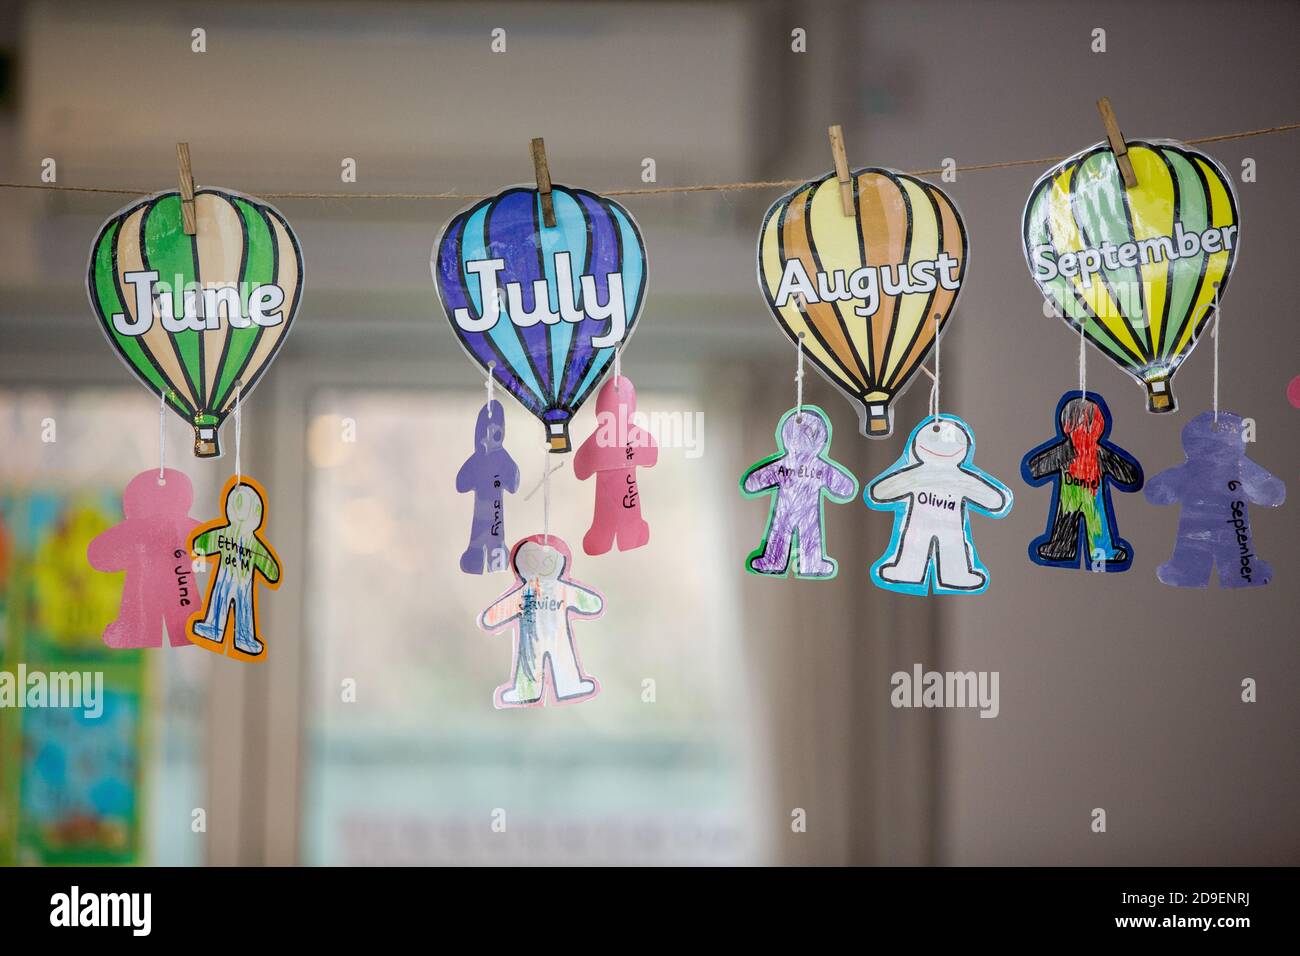 Los dibujos recortados y coloreados de globos de aire caliente con los  meses de verano escritos en ellos tienen perfiles de personas y los nombres  de los niños colgados de ellos para